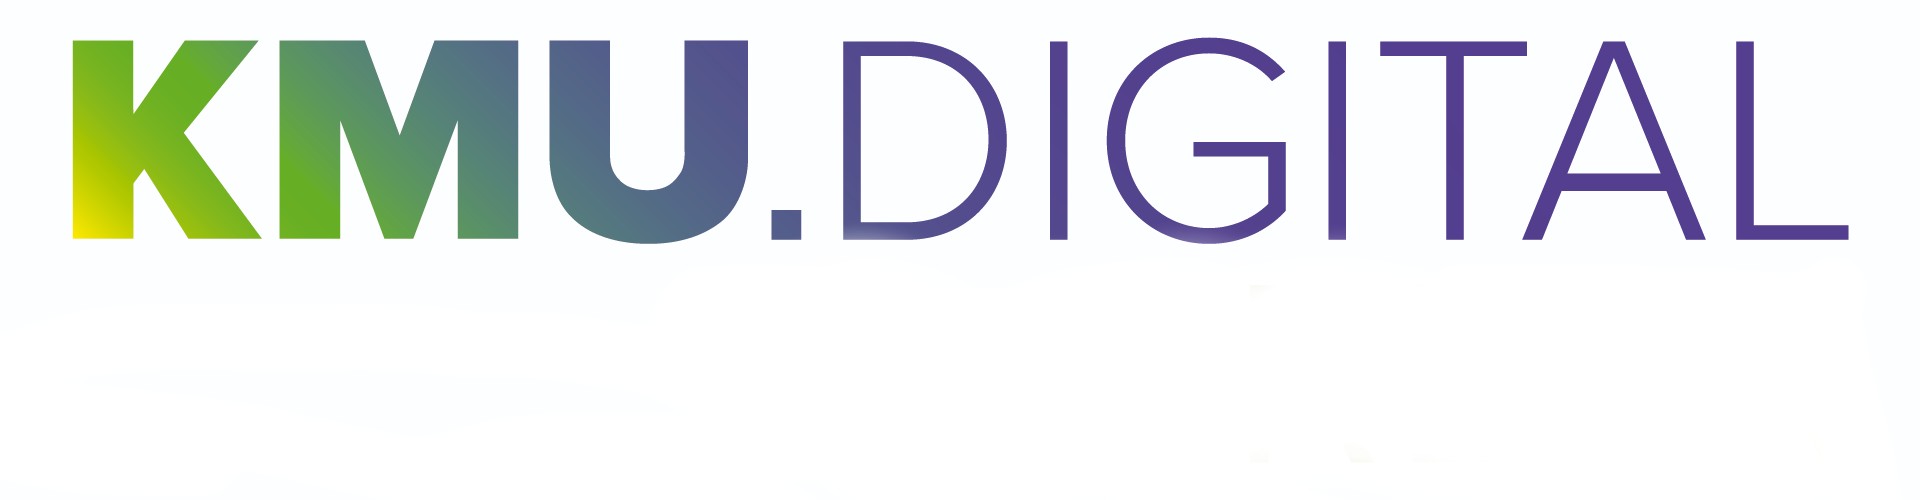 KMU.DIGITAL Logo